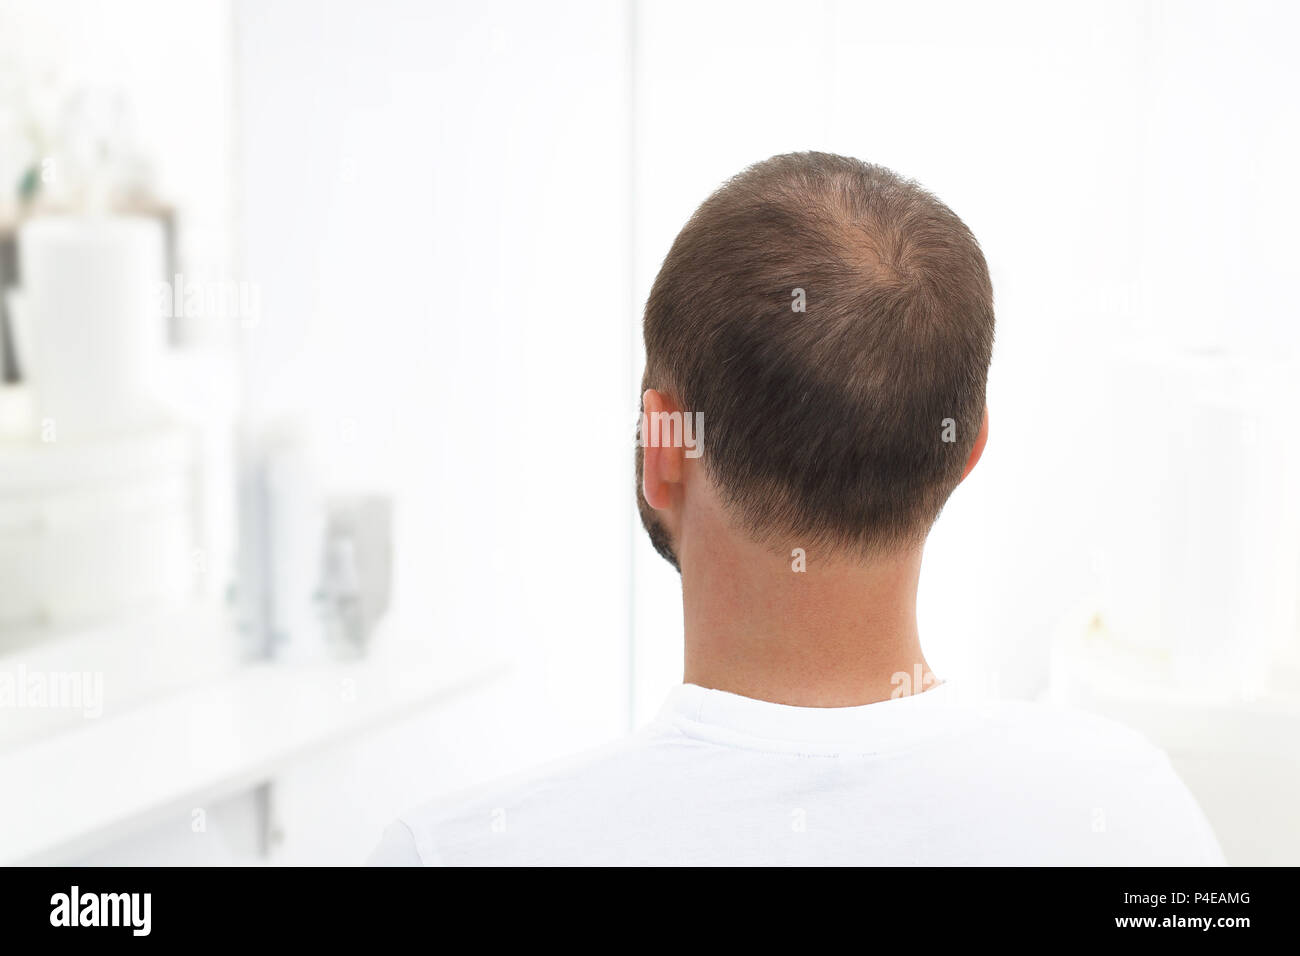 Alopezie. Der Kopf eines Mannes mit dünner werdendem Haar Stockfoto